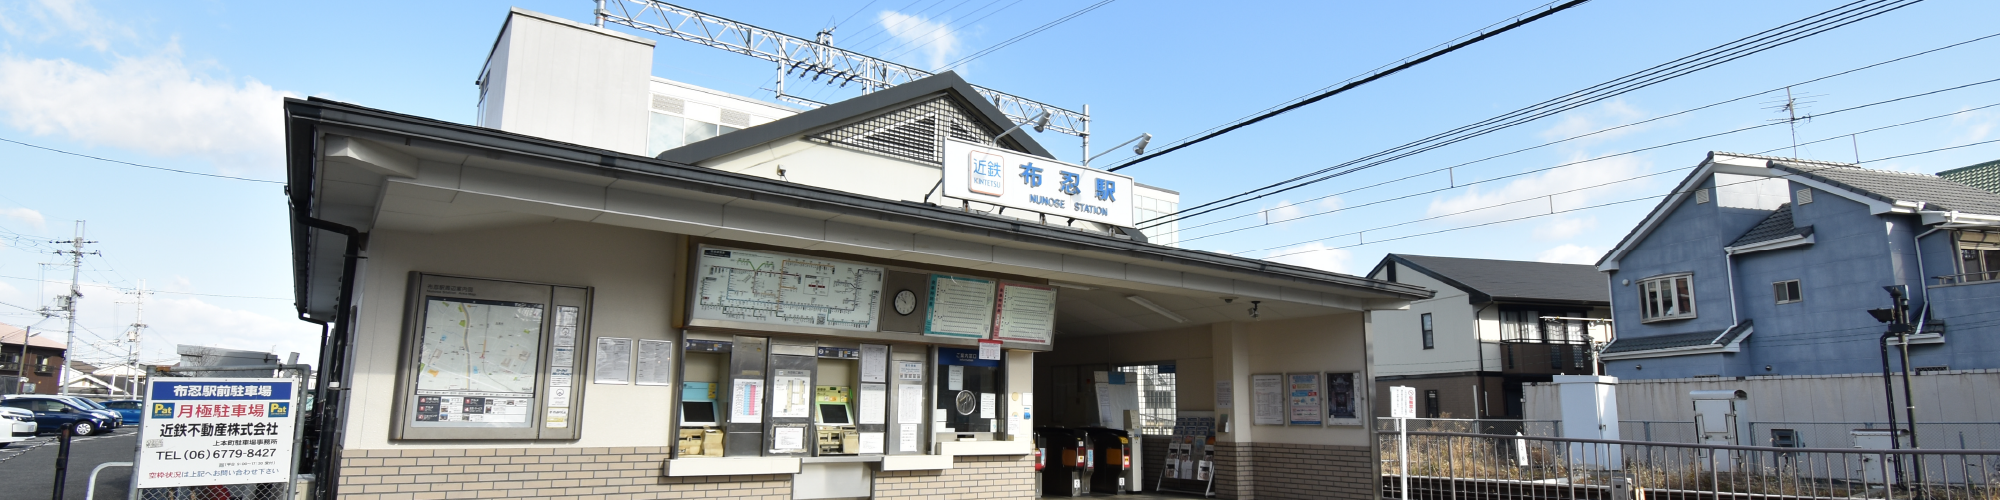 近鉄南大阪線「布忍」駅